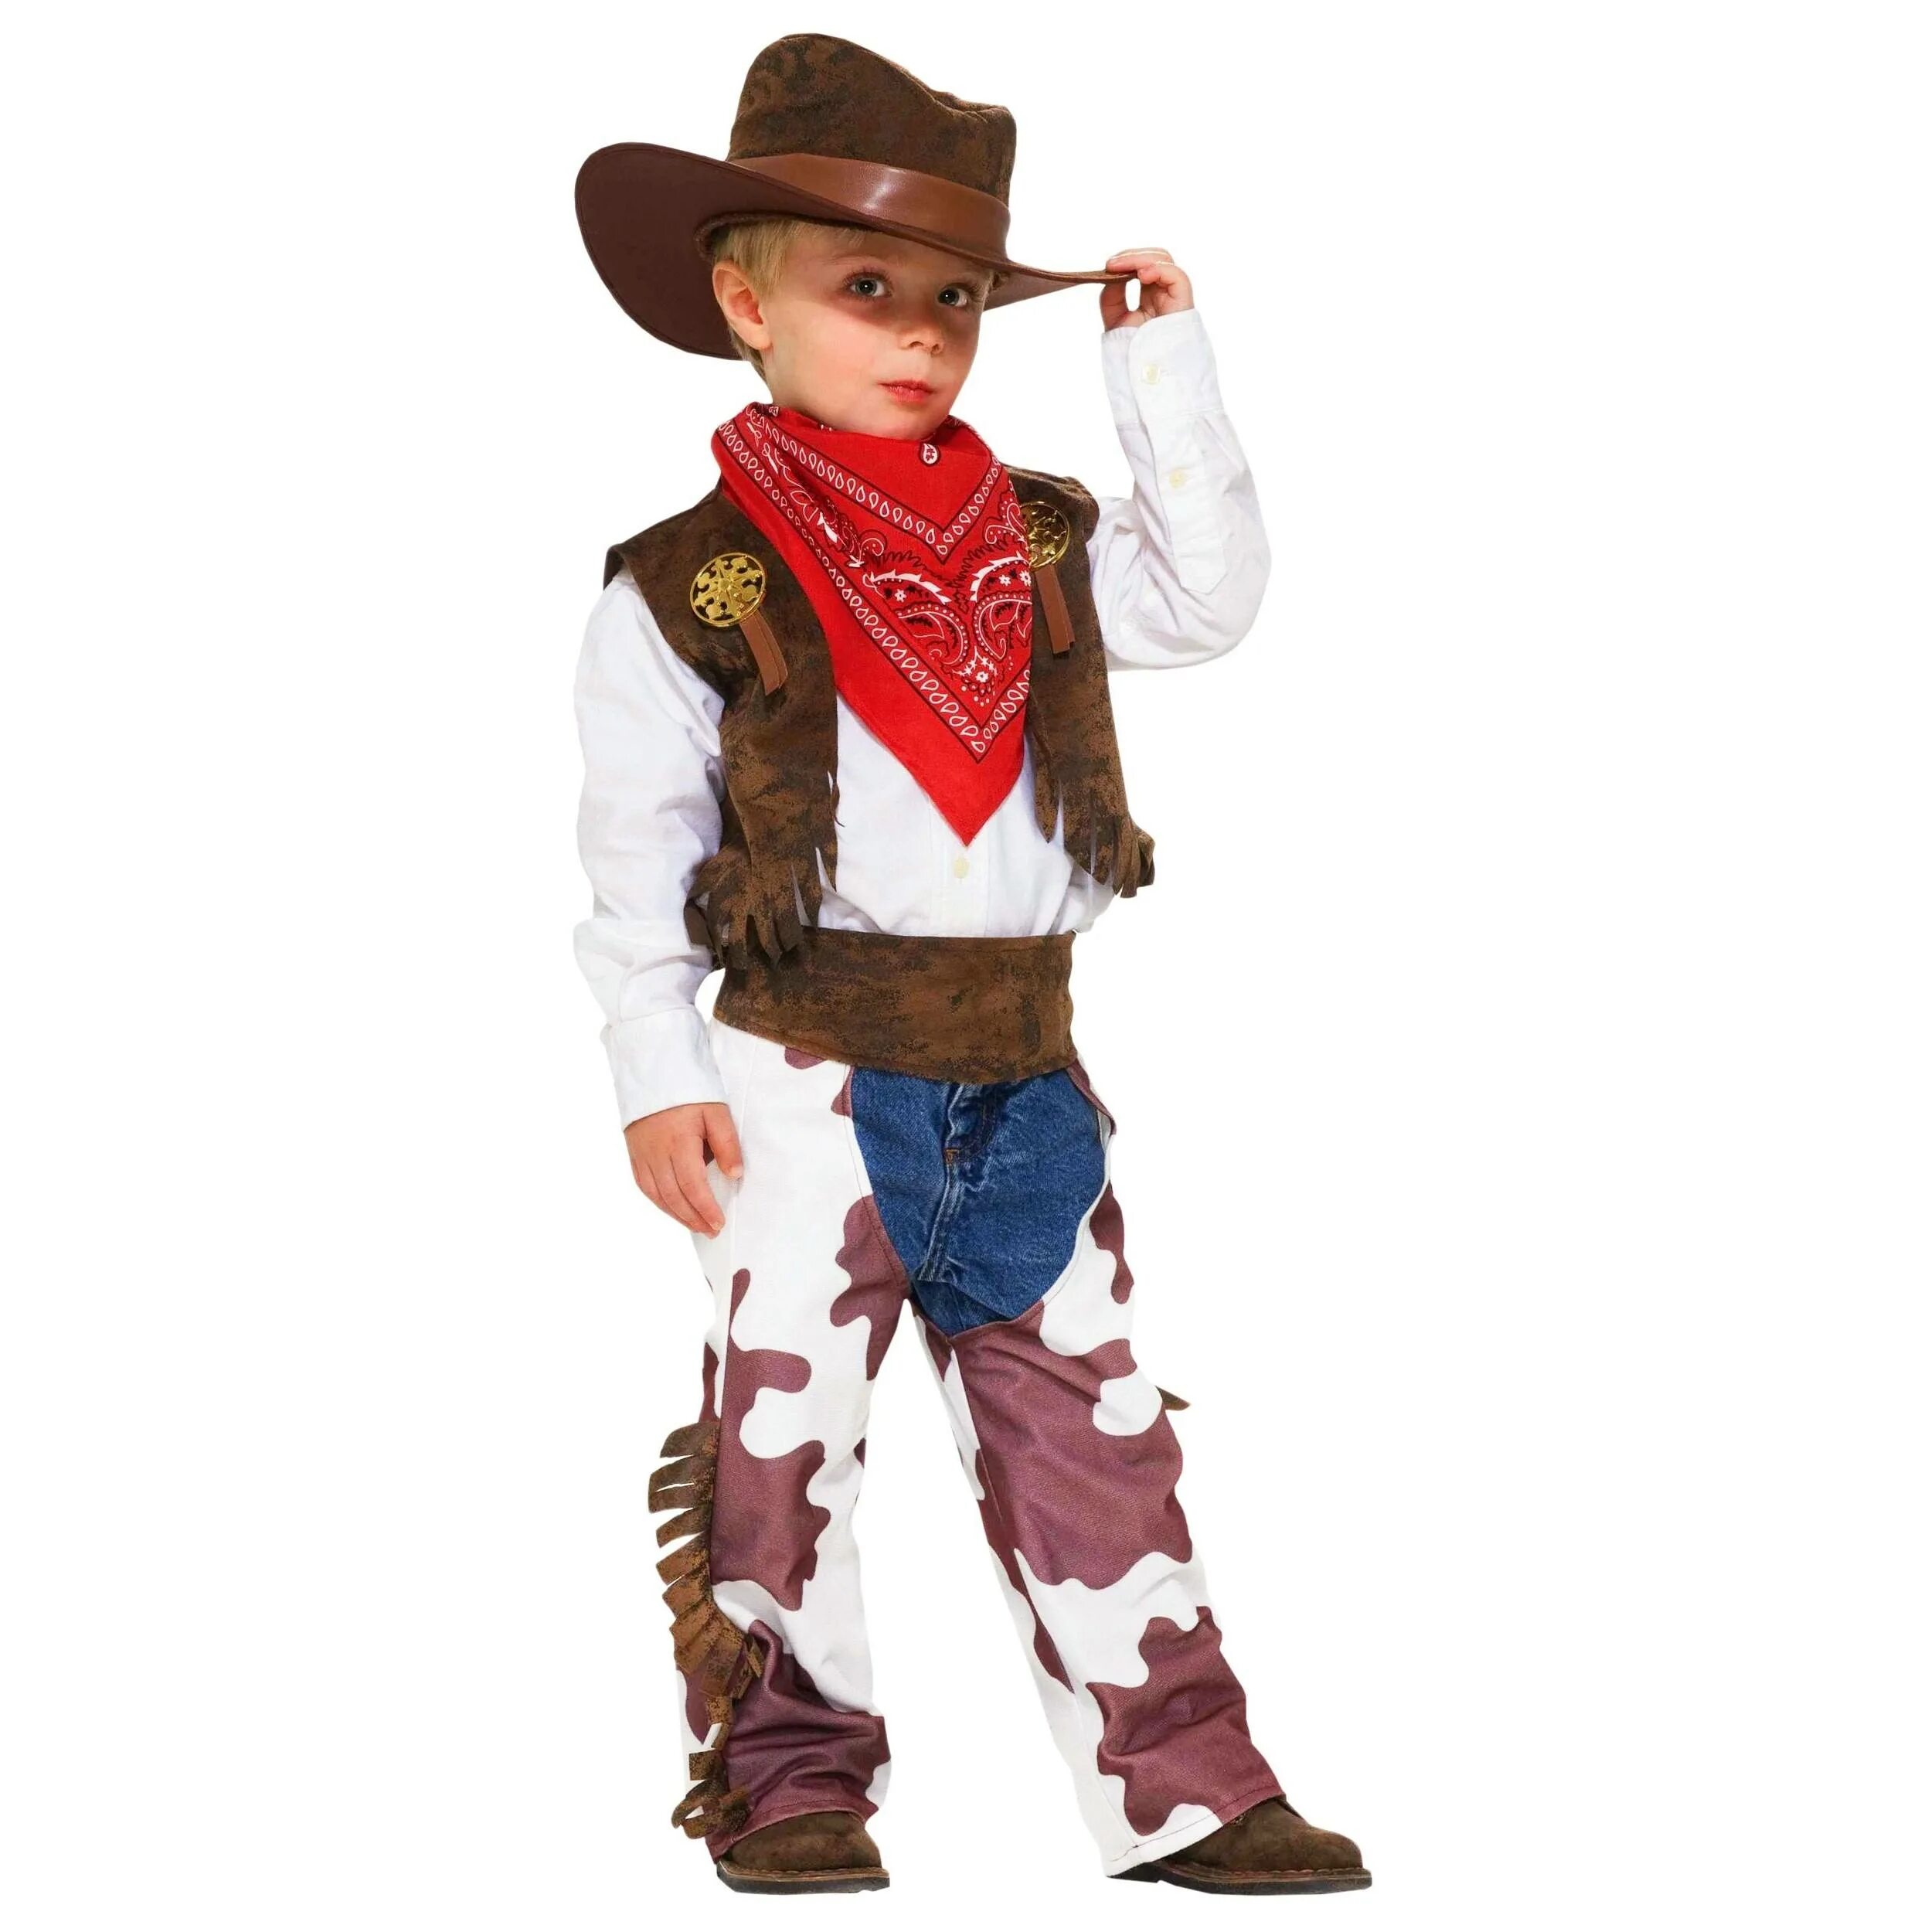 Костюм ковбоя. “Cowboy Kid” Шериф. Рич Фэмили костюм ковбоя. Новогодний костюм для мальчика. Костюм ковбоя для мальчика.